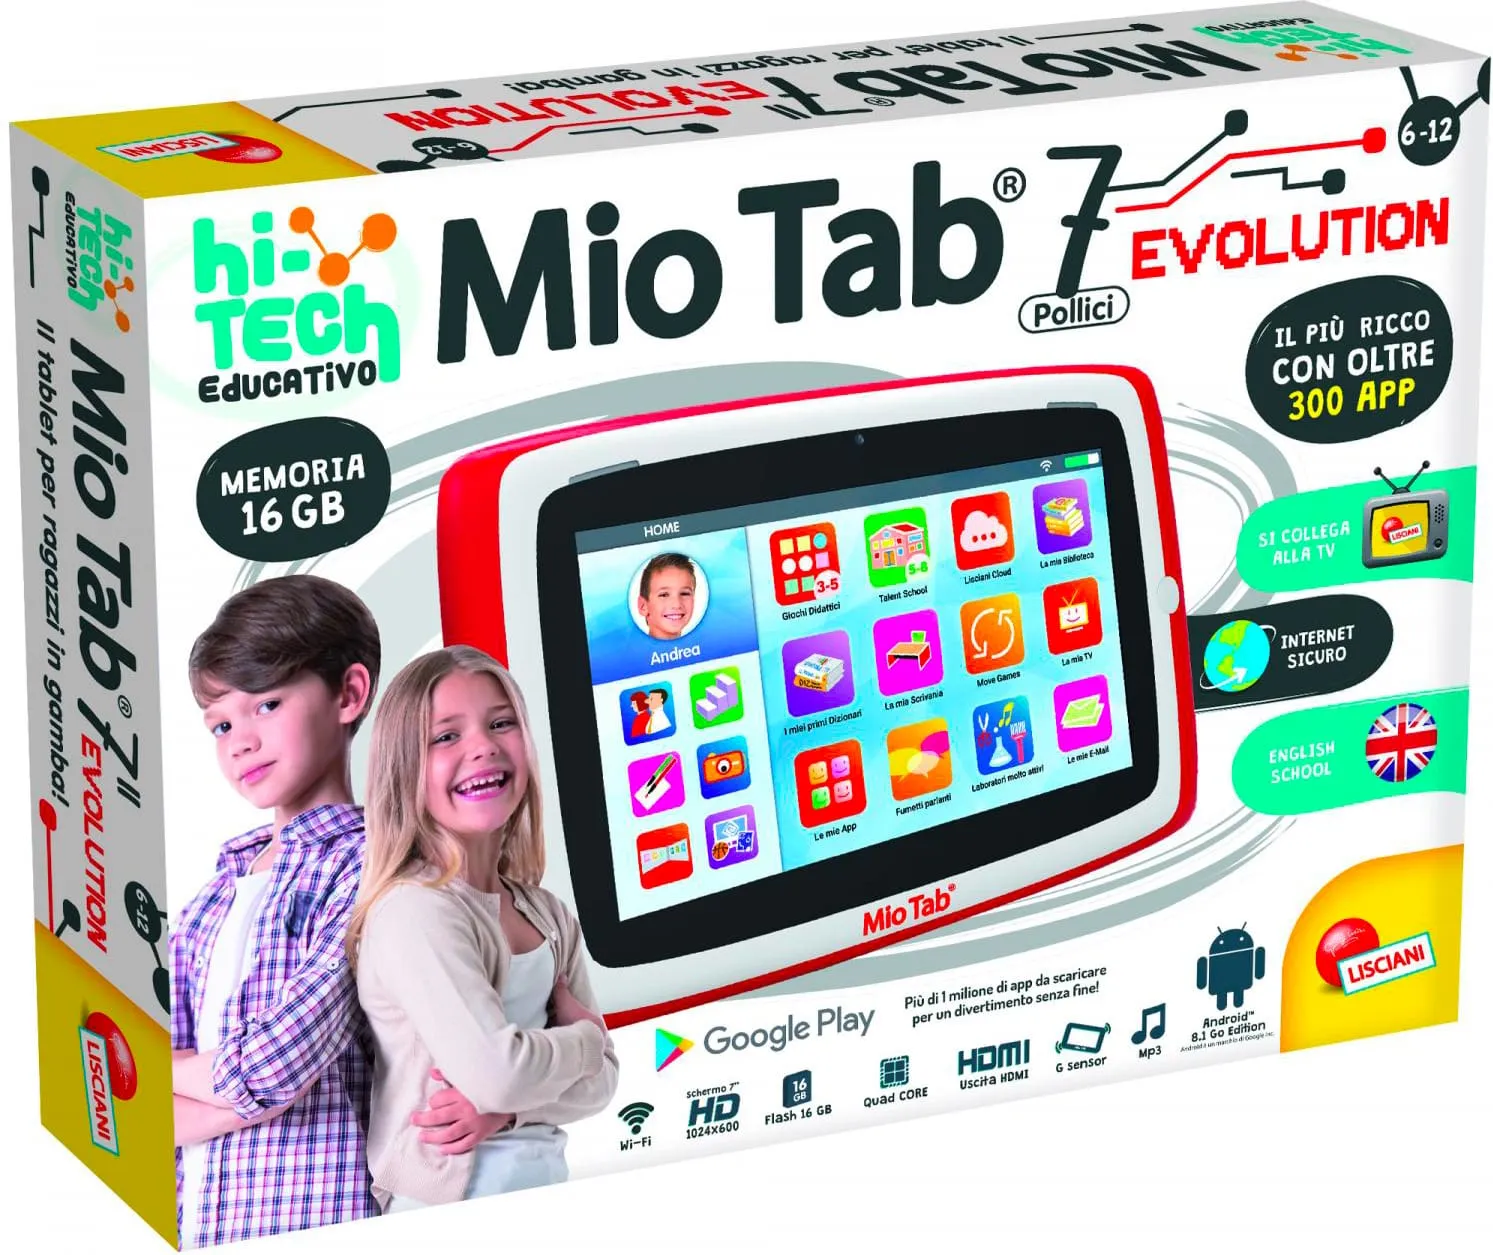 Tablet per Bambini 7 pollici Memoria 16 GB Fotocamera 2 Mpx Wifi Micro HDMI  colore Rosso - 77380 Mio Tab 7 Evolution